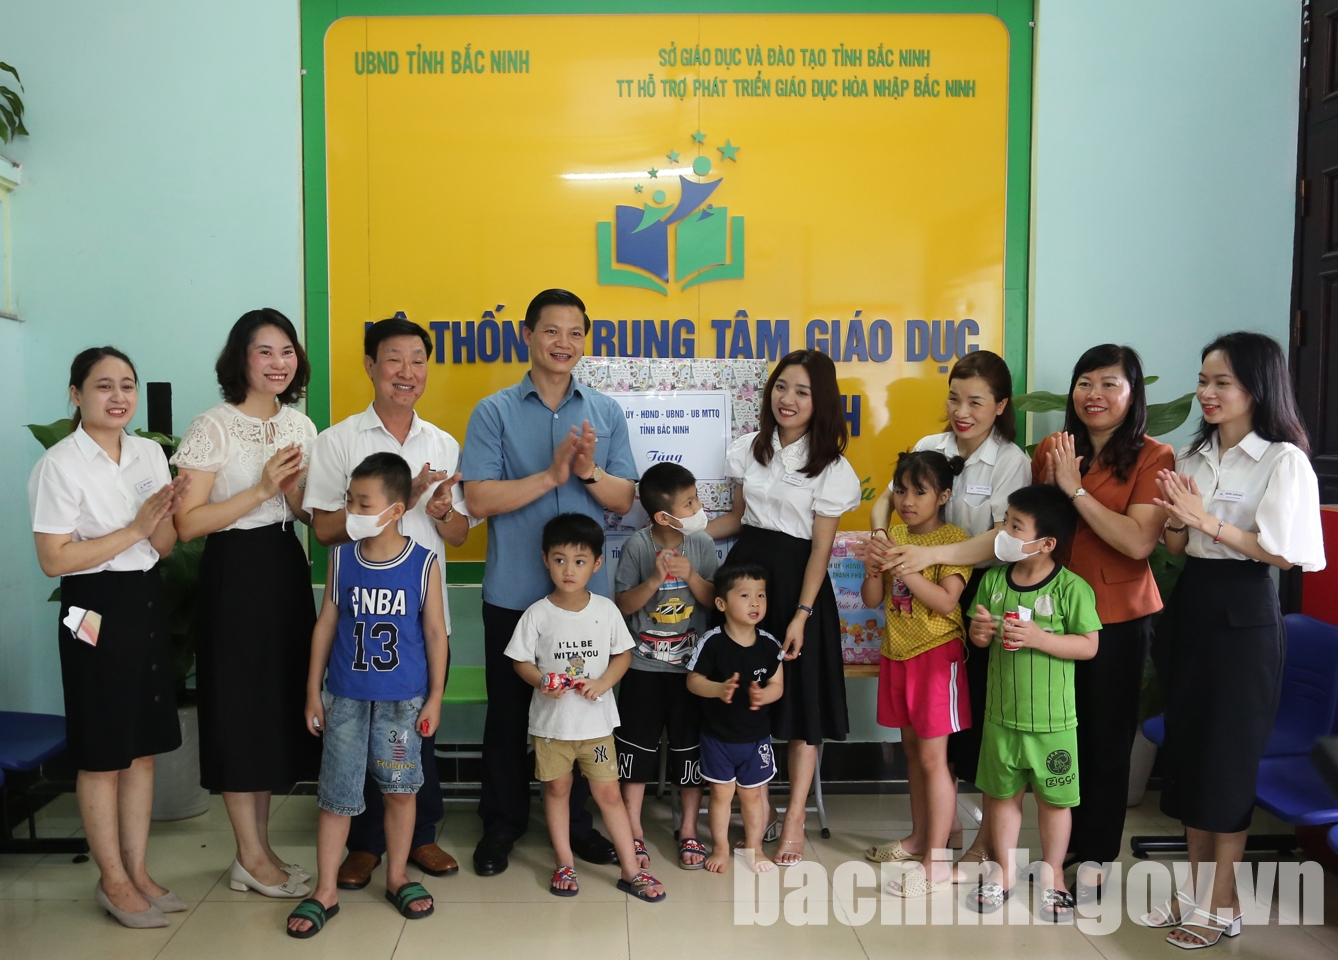 Lãnh đạo tỉnh thăm, tặng quà Trung tâm hỗ trợ phát triển giáo dục hòa nhập Bắc Ninh